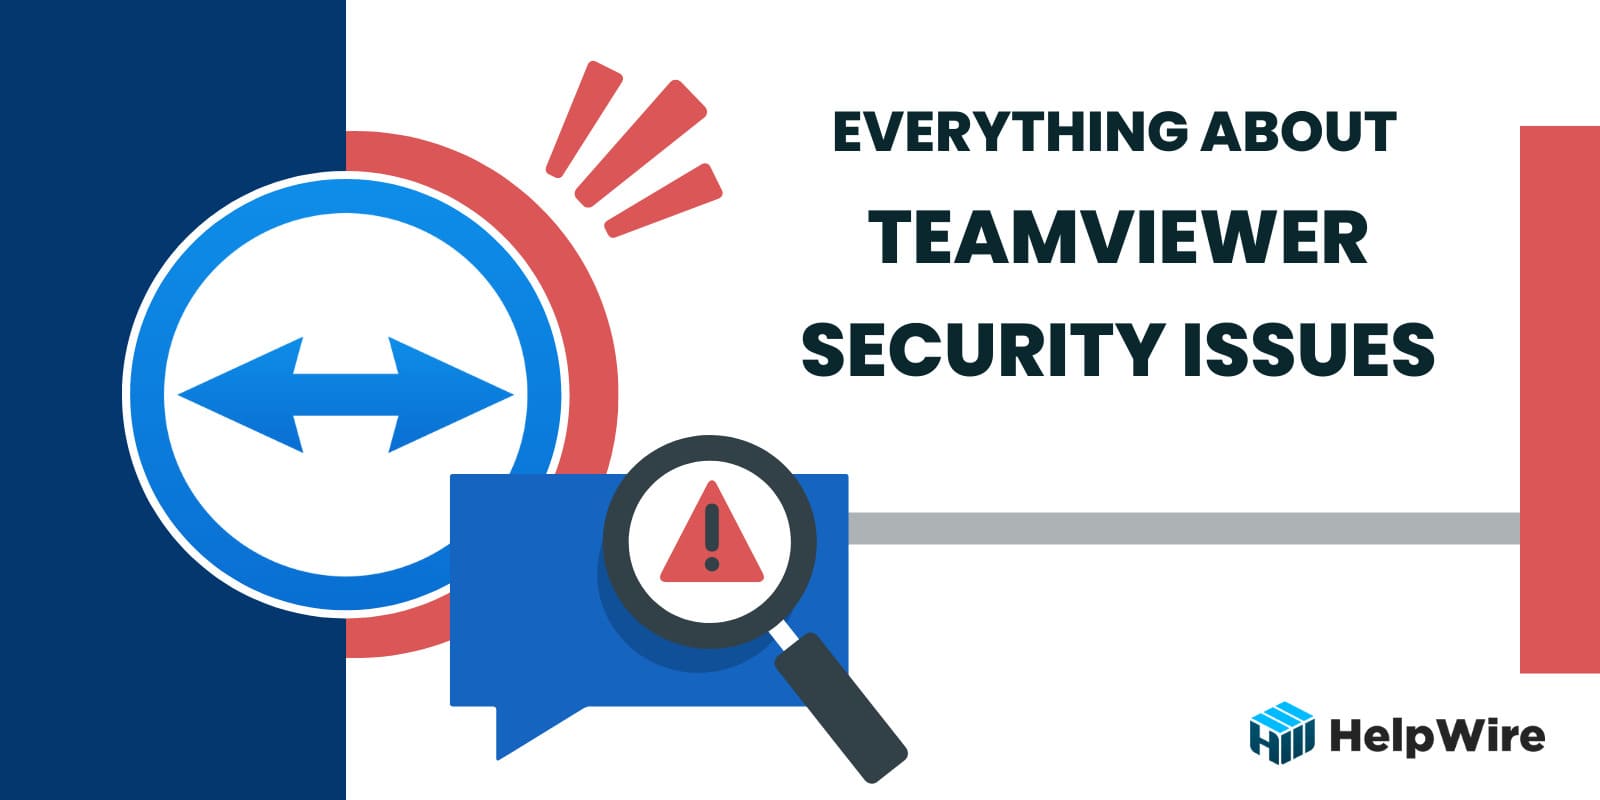 teamviewer security